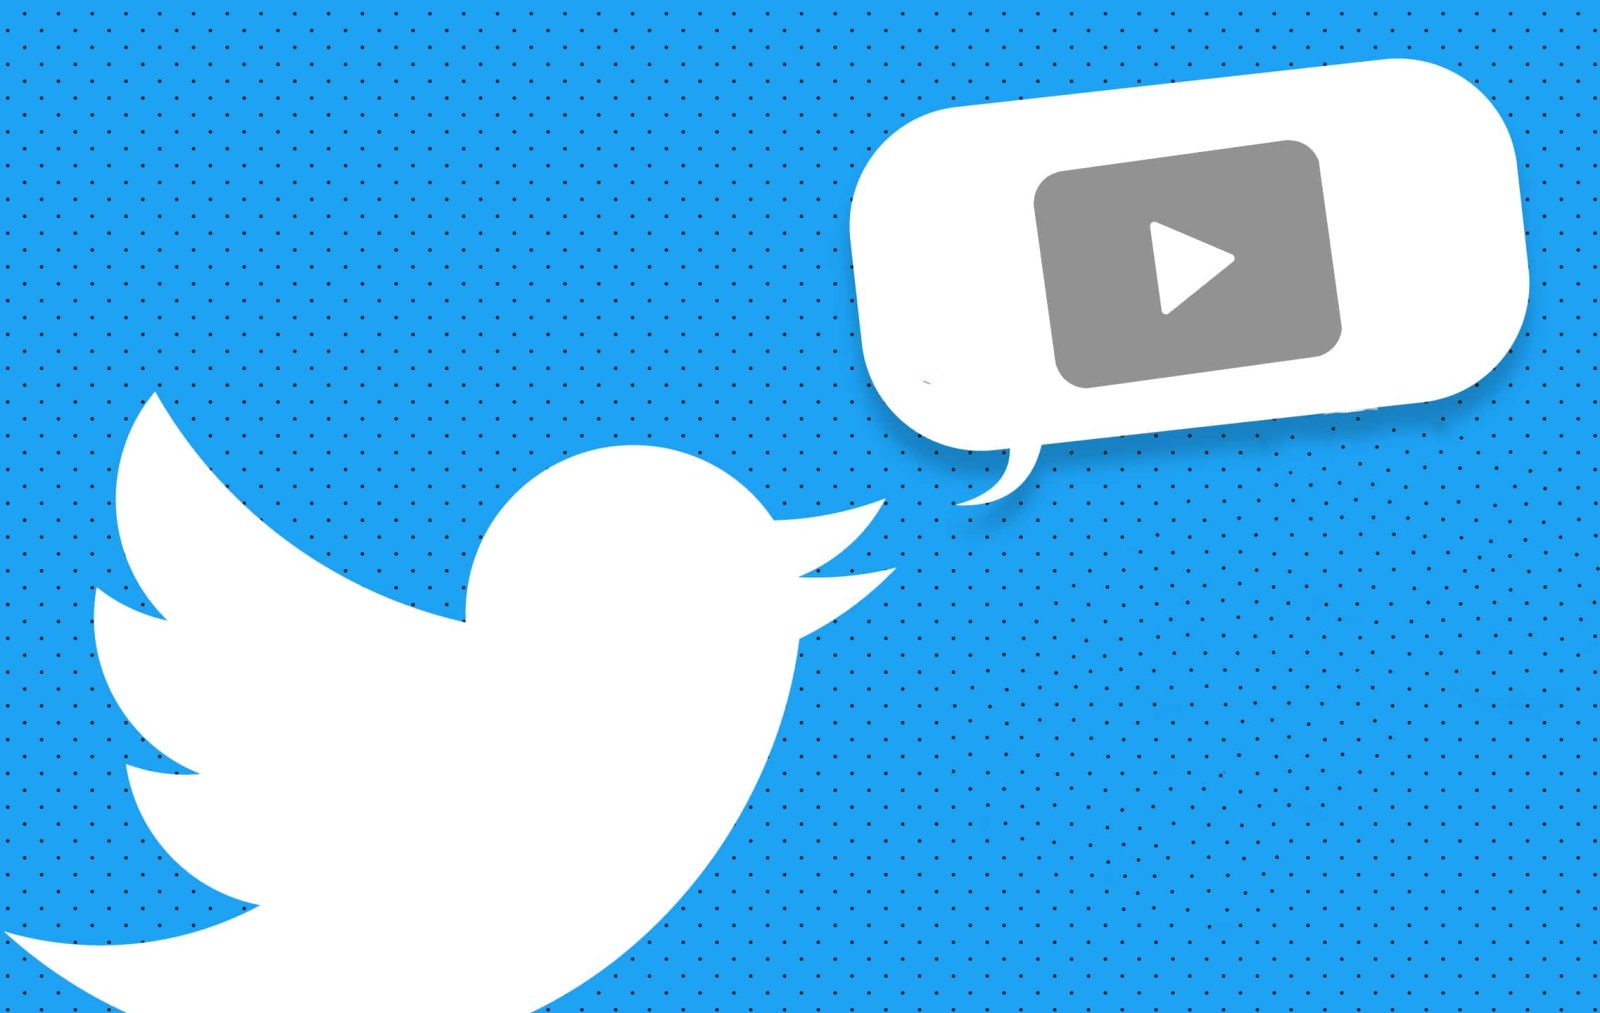 Cara Download Video di Twitter: Simpan Video Menarik dengan Mudah